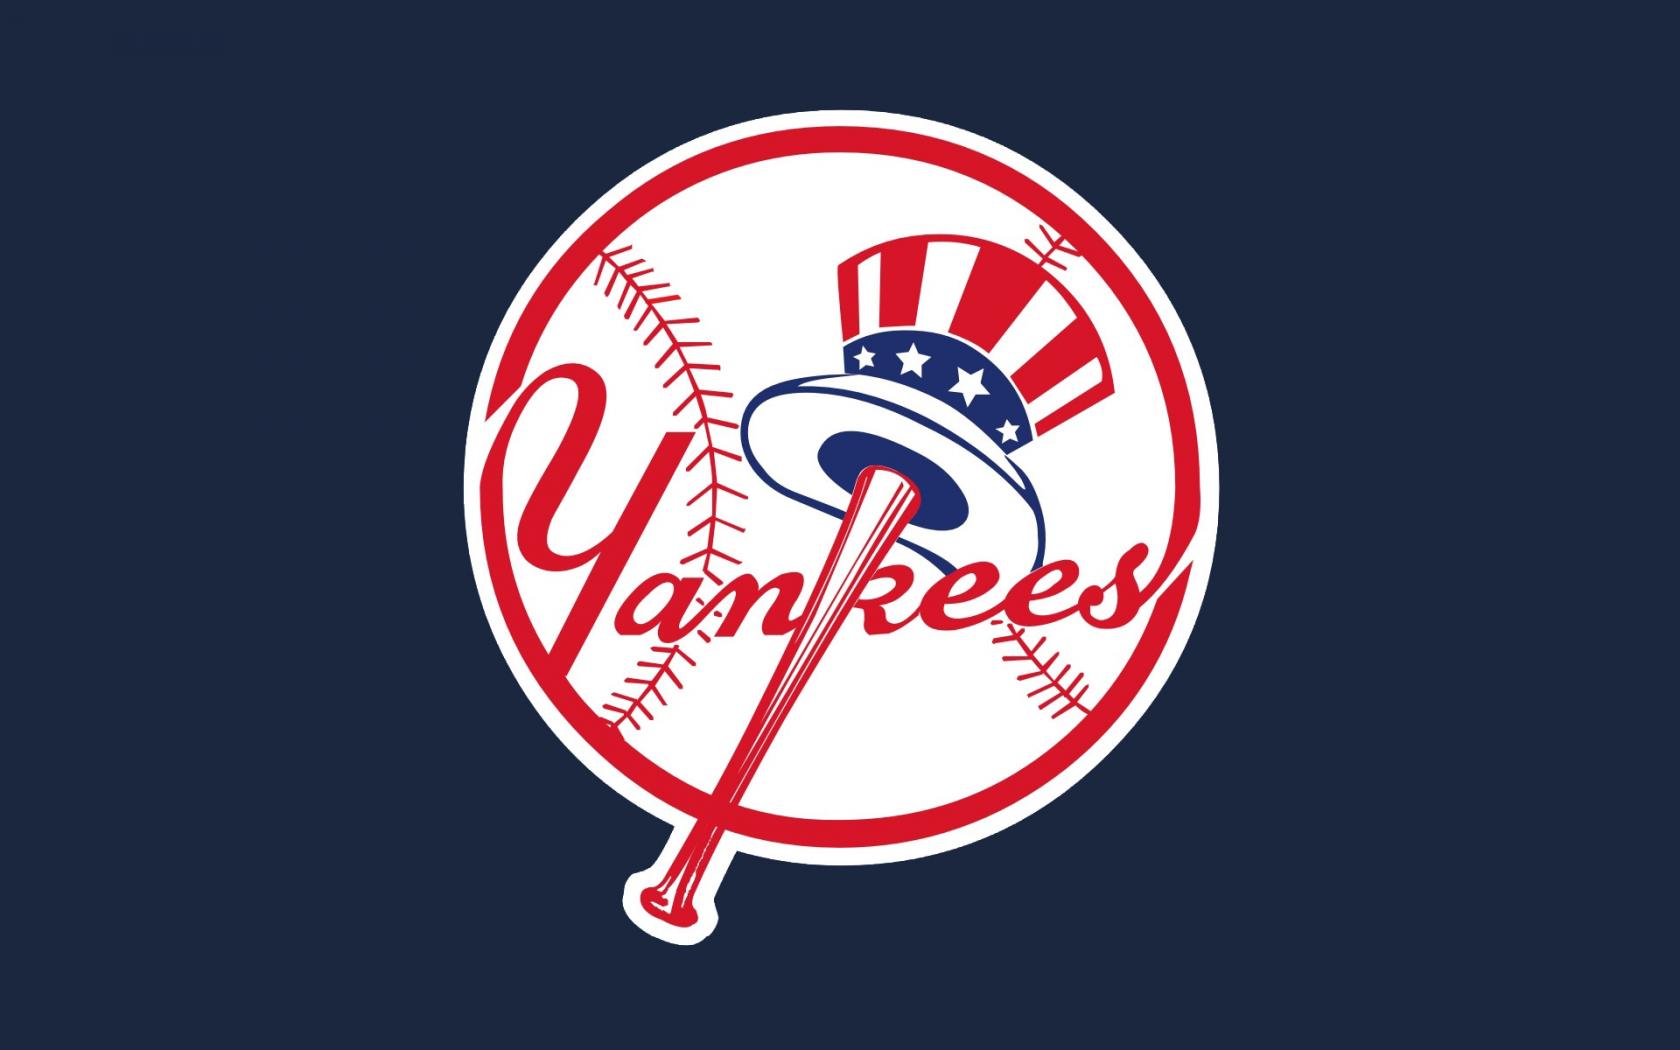 New York Yankees wallpaper. New York Yankees wallpaper